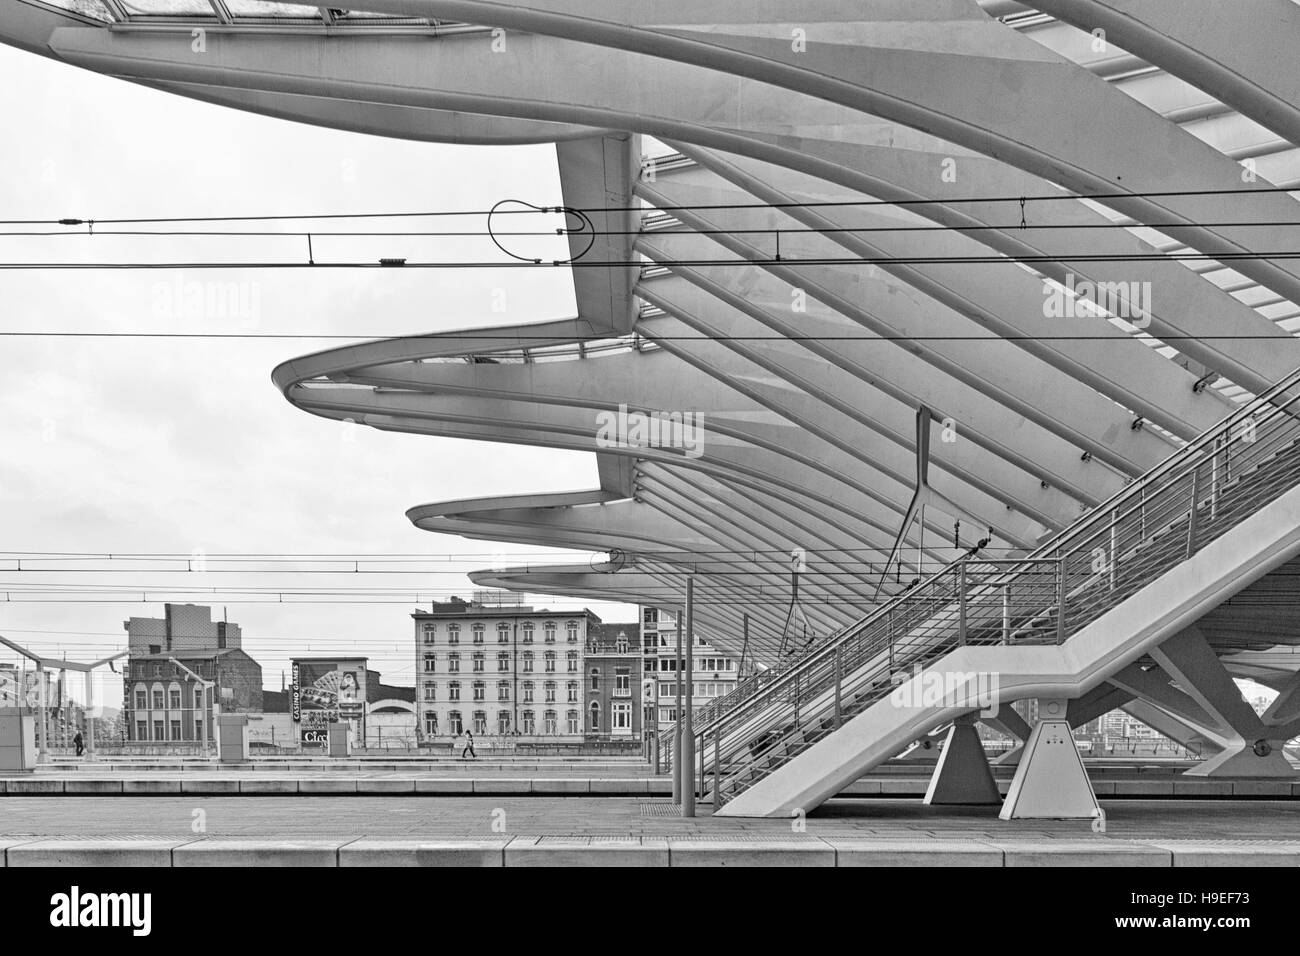 Liegi, Belgio - Dicembre 2014: dettagliate del tetto della Liege-Guillemins stazione ferroviaria, progettato da Santiago Calatrava. Fotografia in bianco e nero Foto Stock